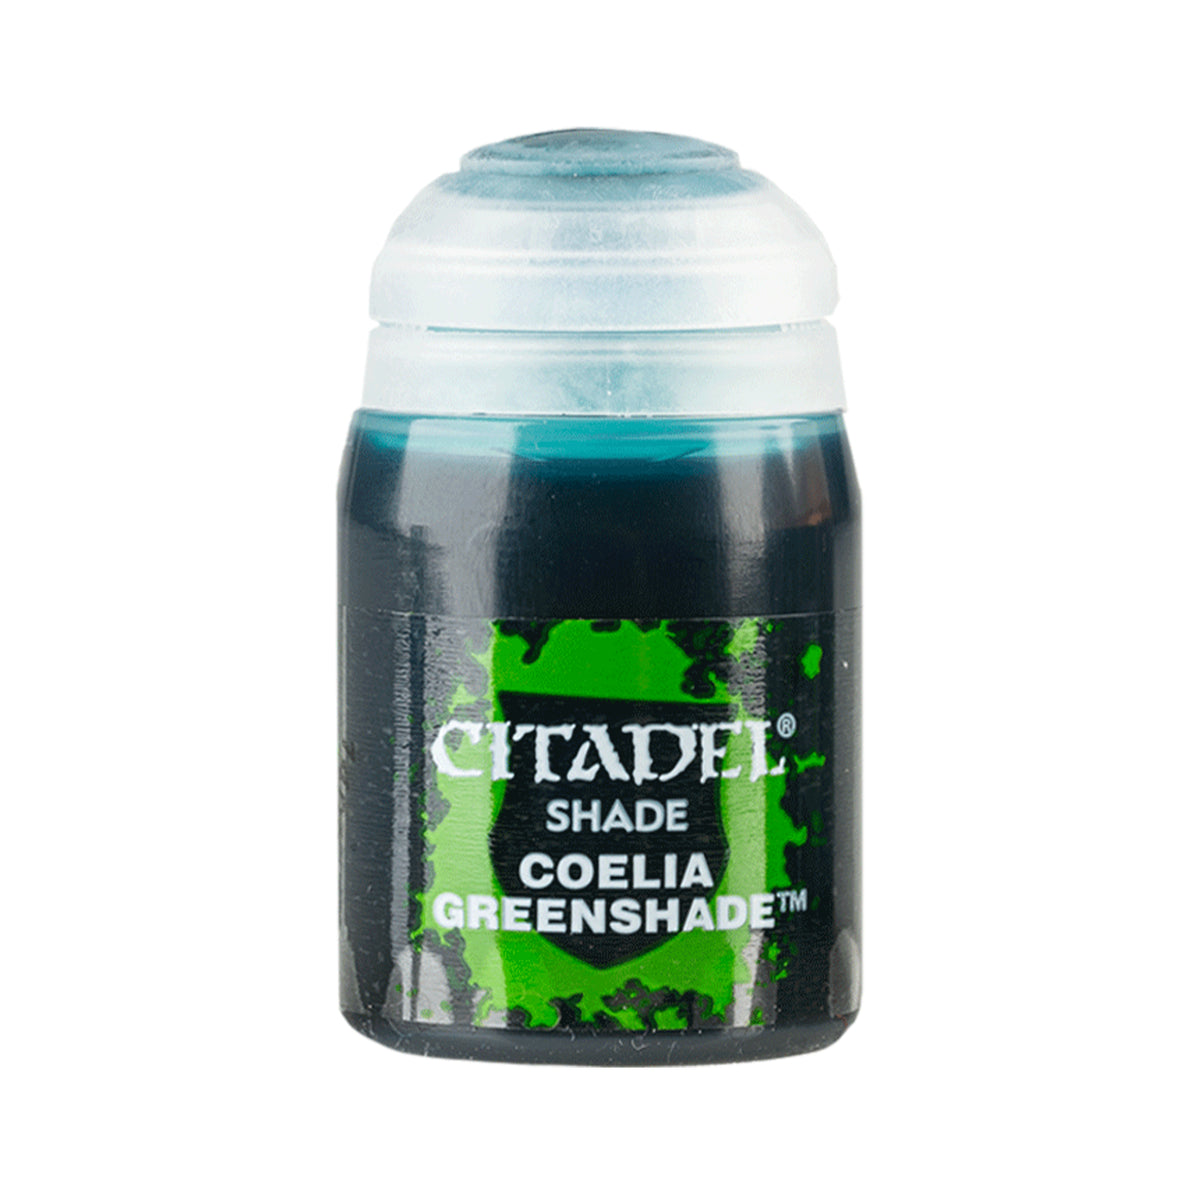 Coelia Greenshade - Citadel Shade